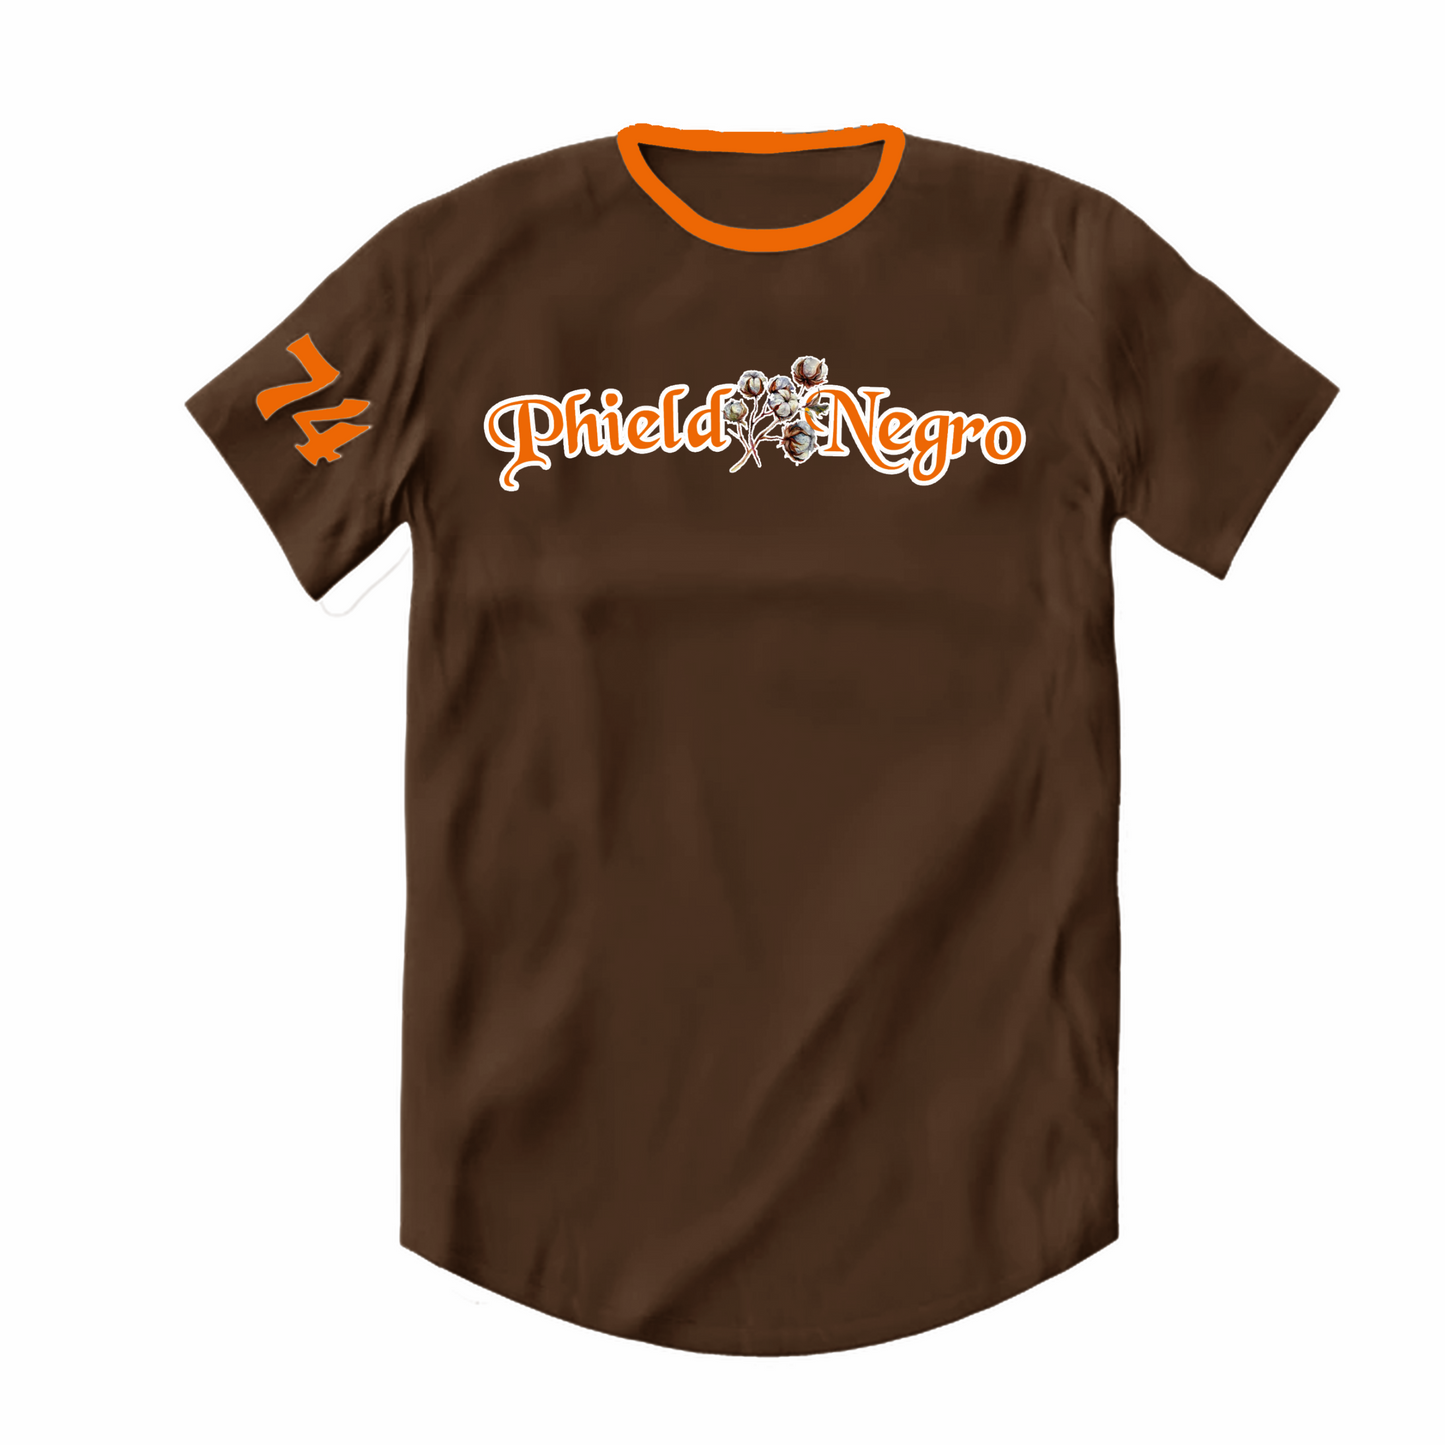 Premium Phield Negro T-Shirt (Chocolate Brown and Orange)